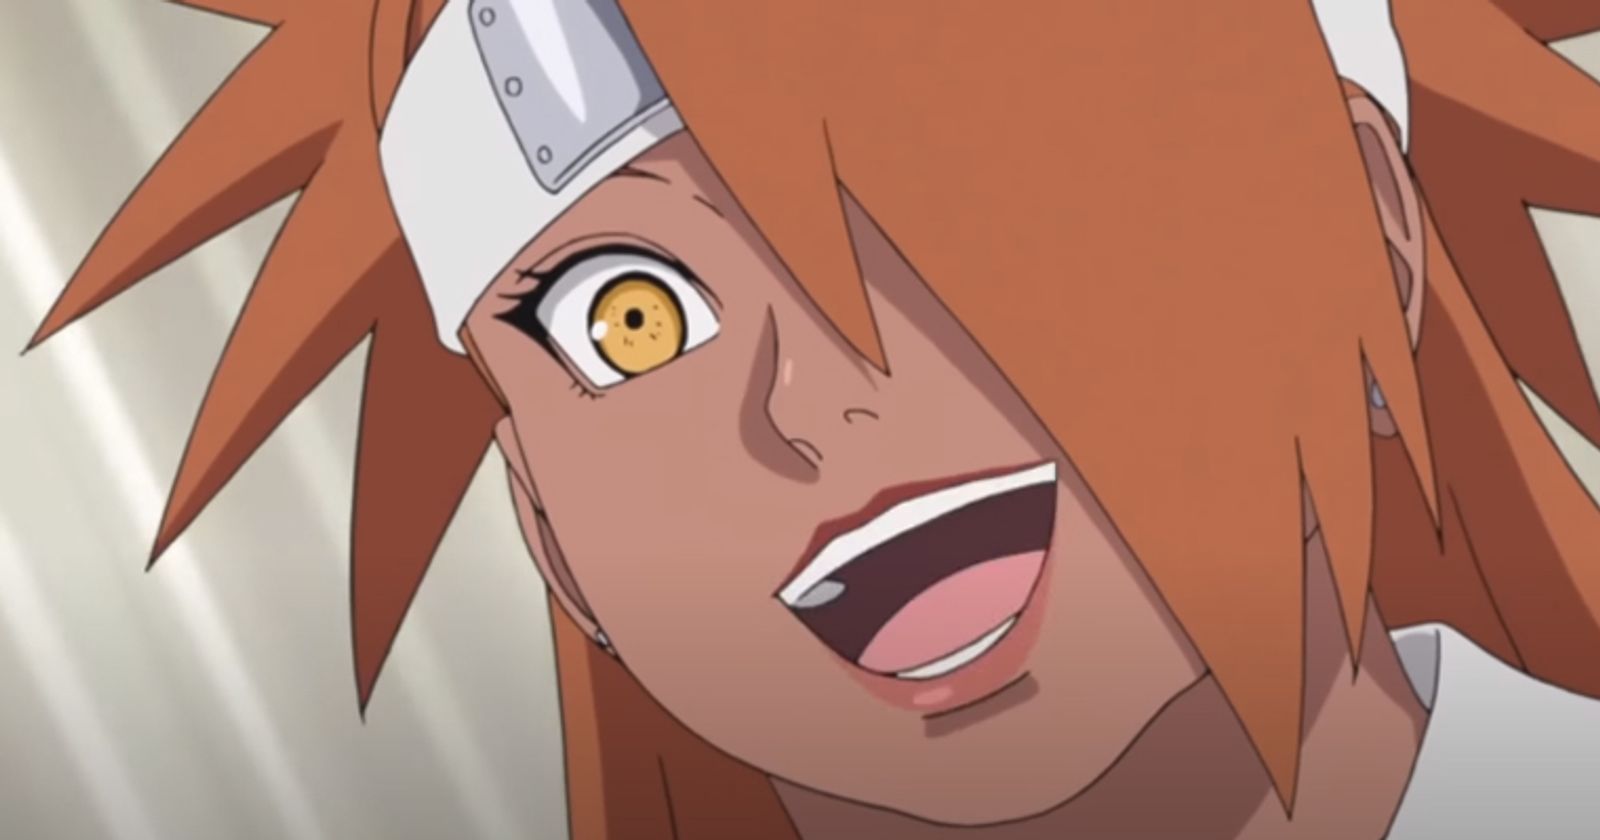 Boruto: Naruto Next Generations Episode 257 - Anime Review